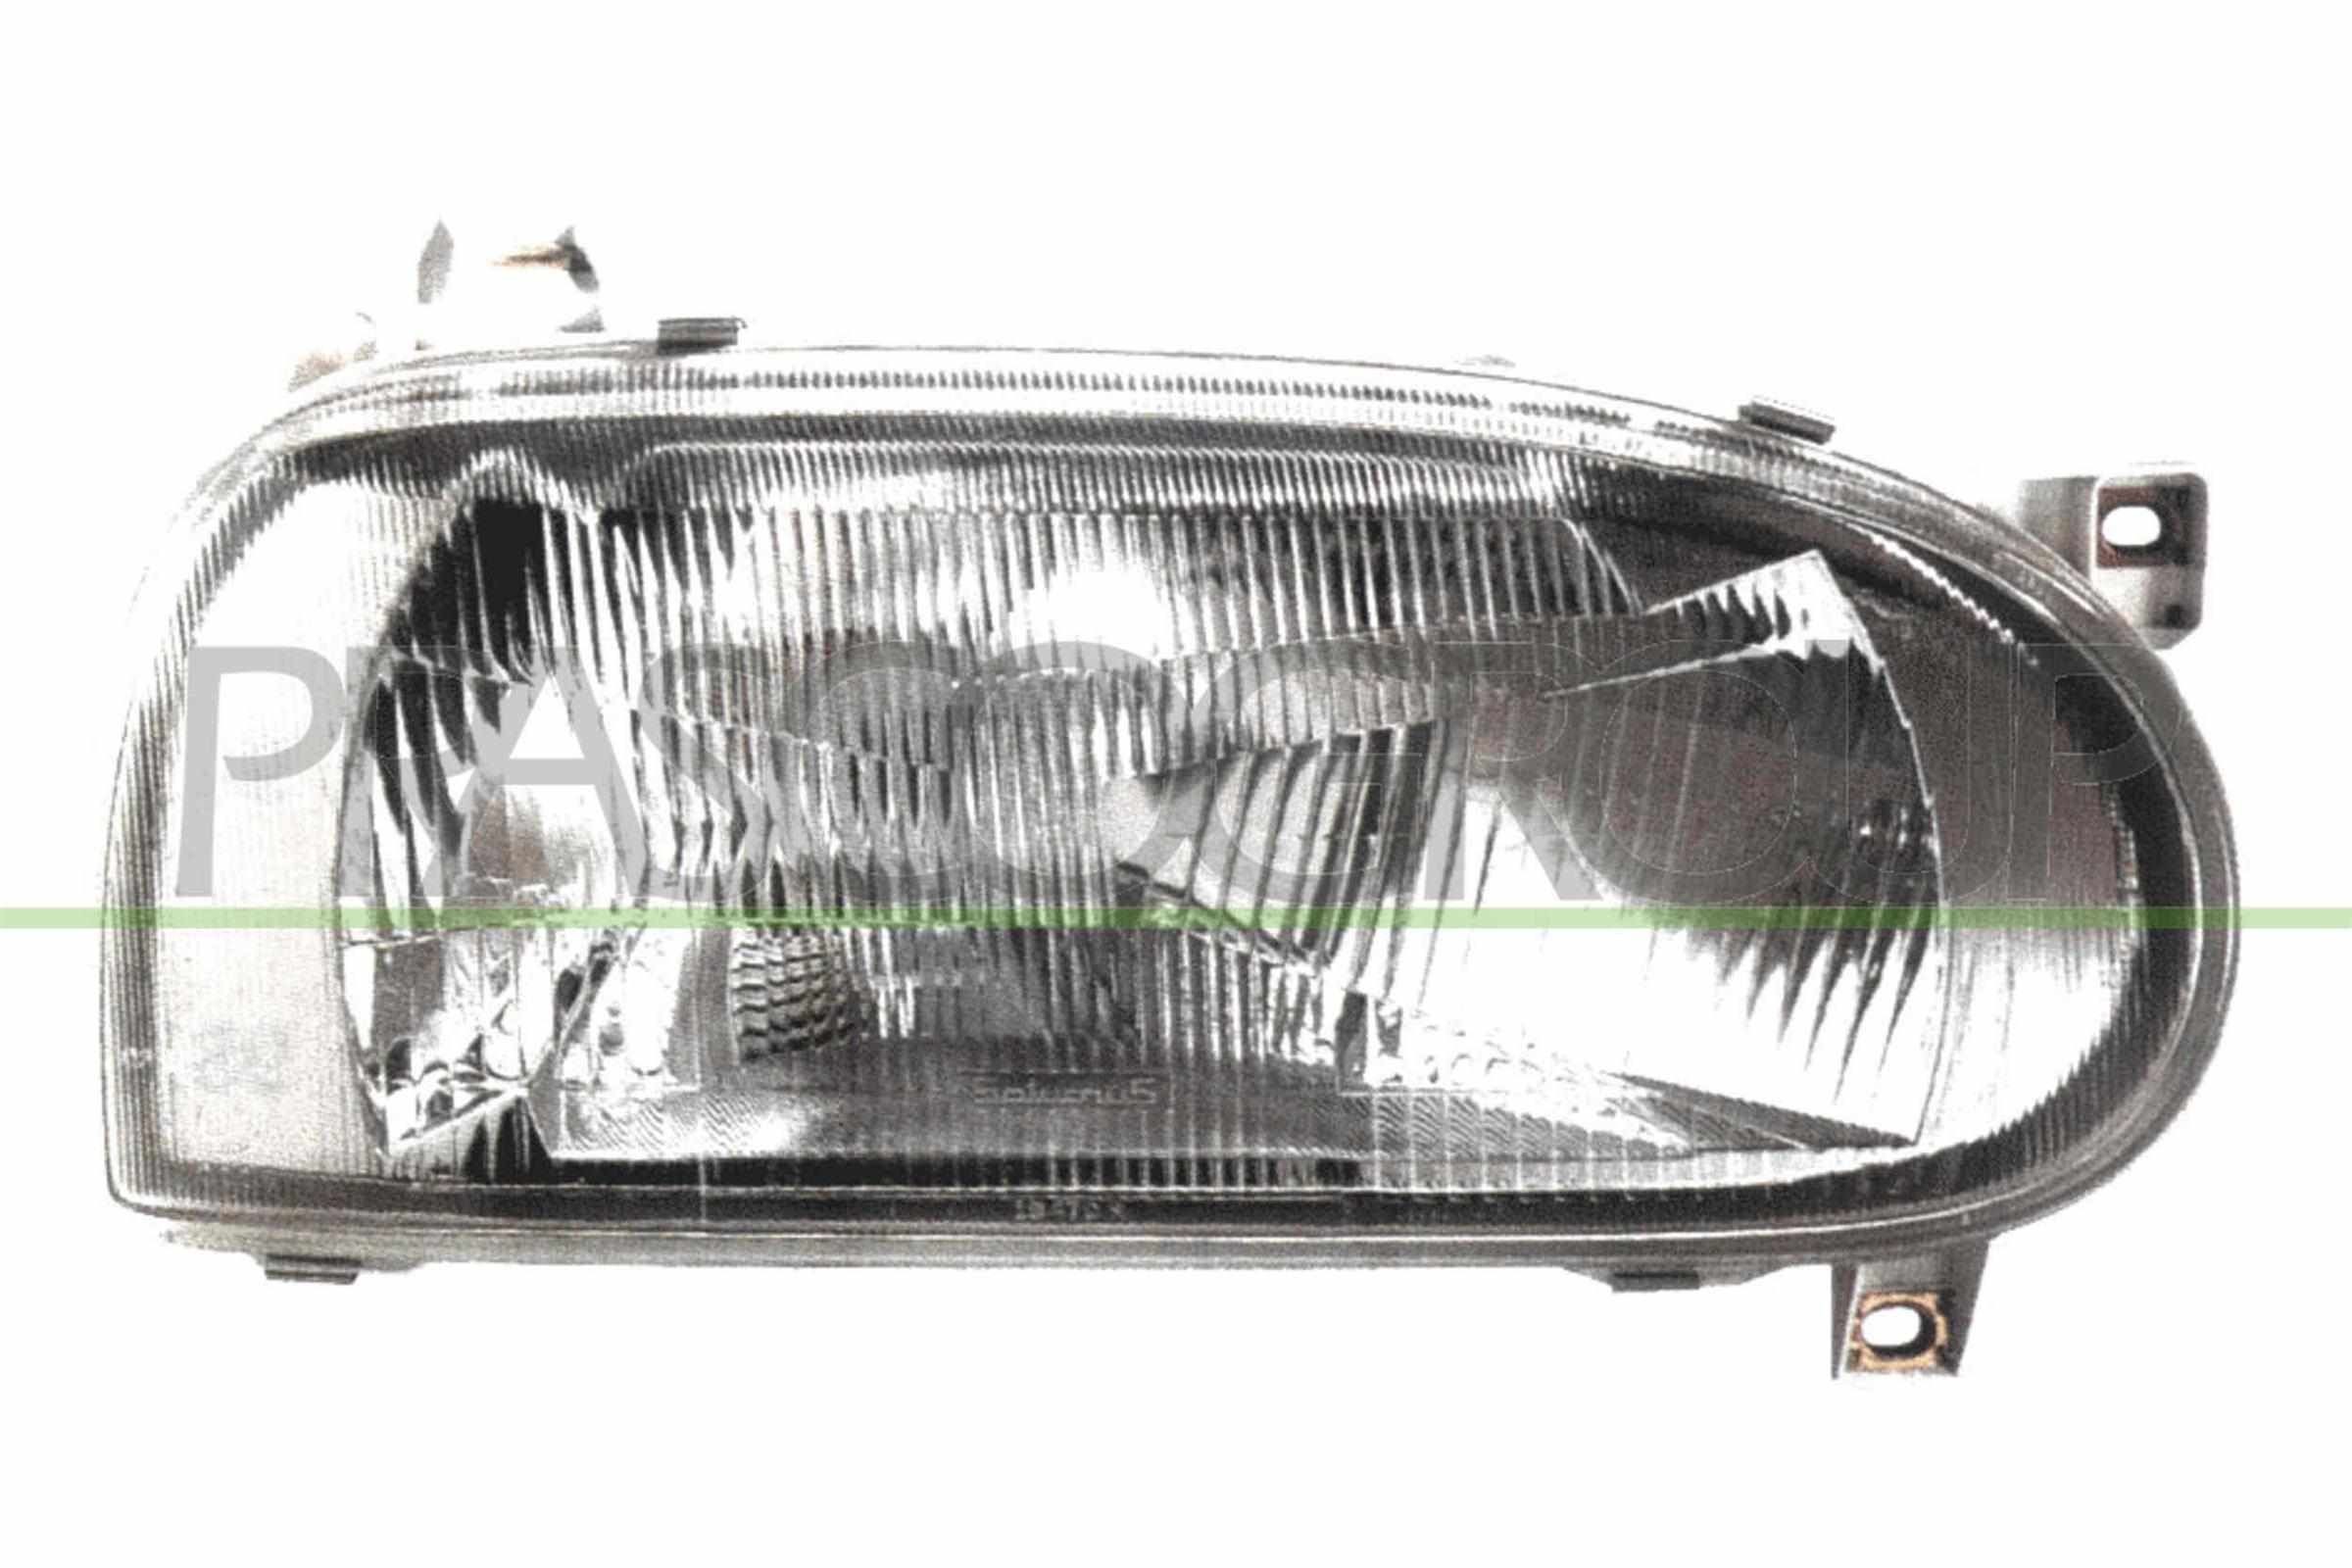 Scheinwerfer für Golf 3 LED und Xenon kaufen - Original Qualität und  günstige Preise bei AUTODOC